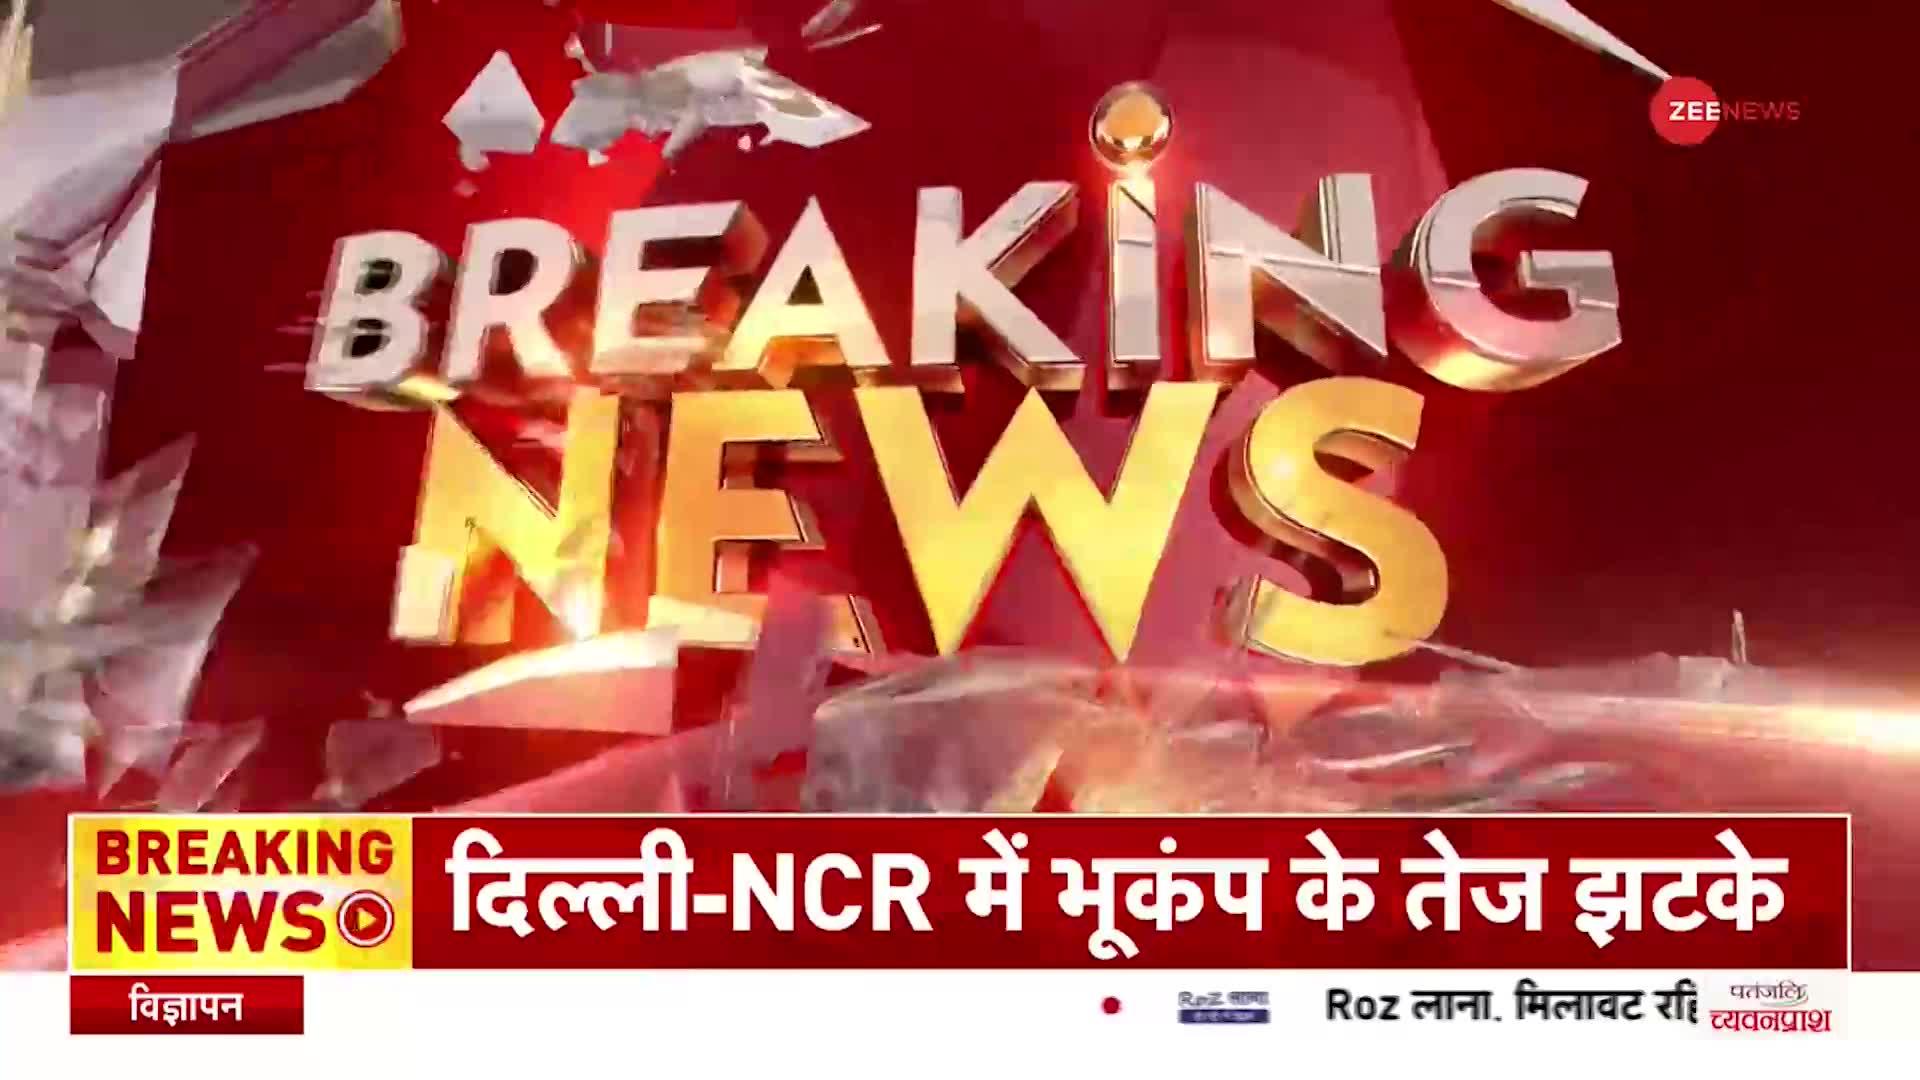 Earthquake in Delhi-NCR: फिर भूकंप से कांपा दिल्ली-NCR, पाक-अफगानिस्तान में भी कांपी धरती